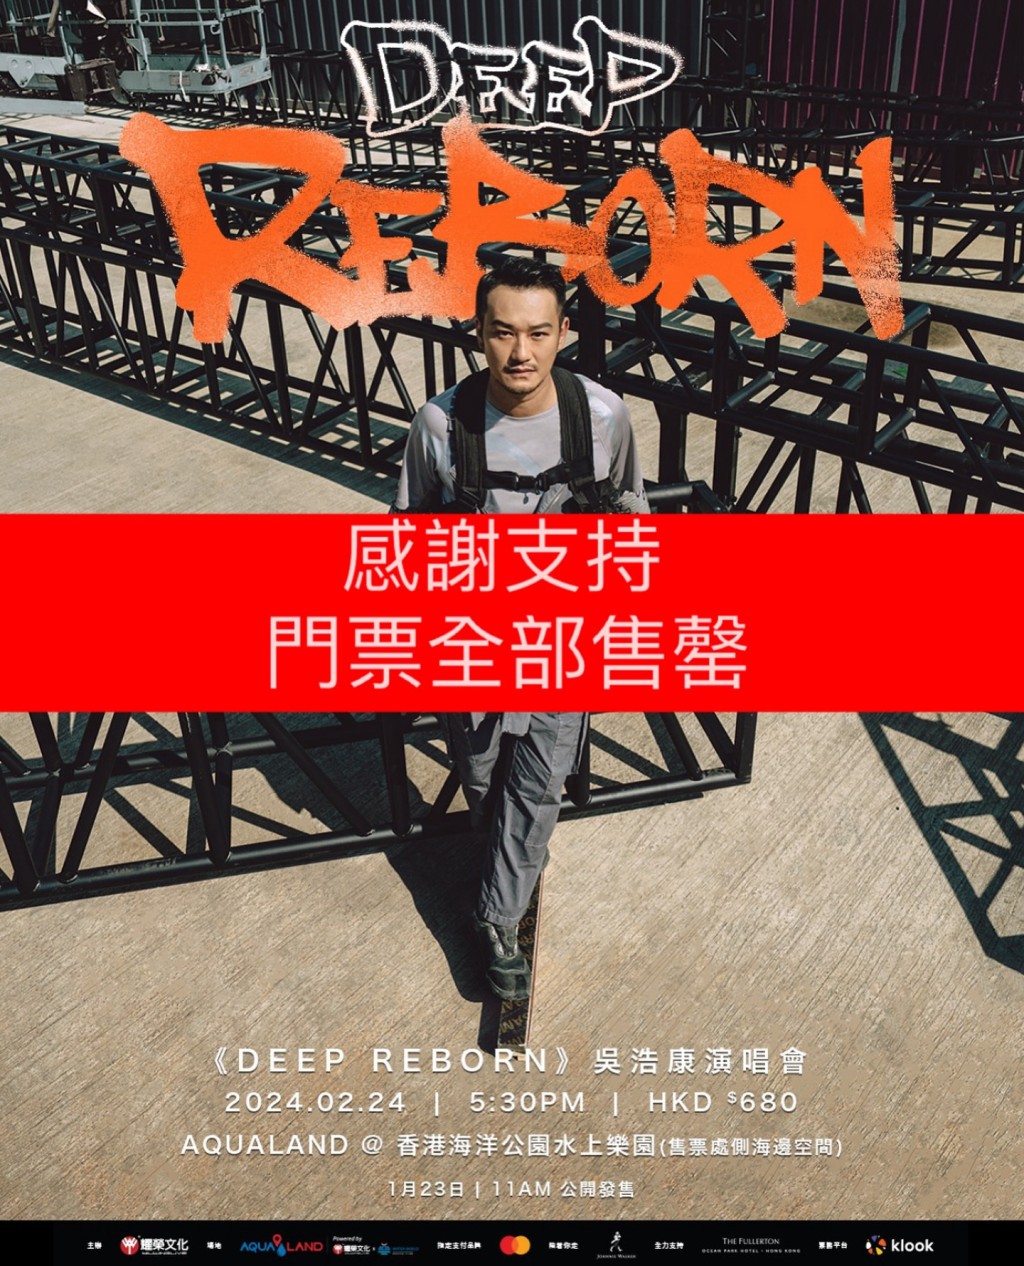 吳浩康乘勢舉行演唱會《Deep Reborn》，門票火速售罄。